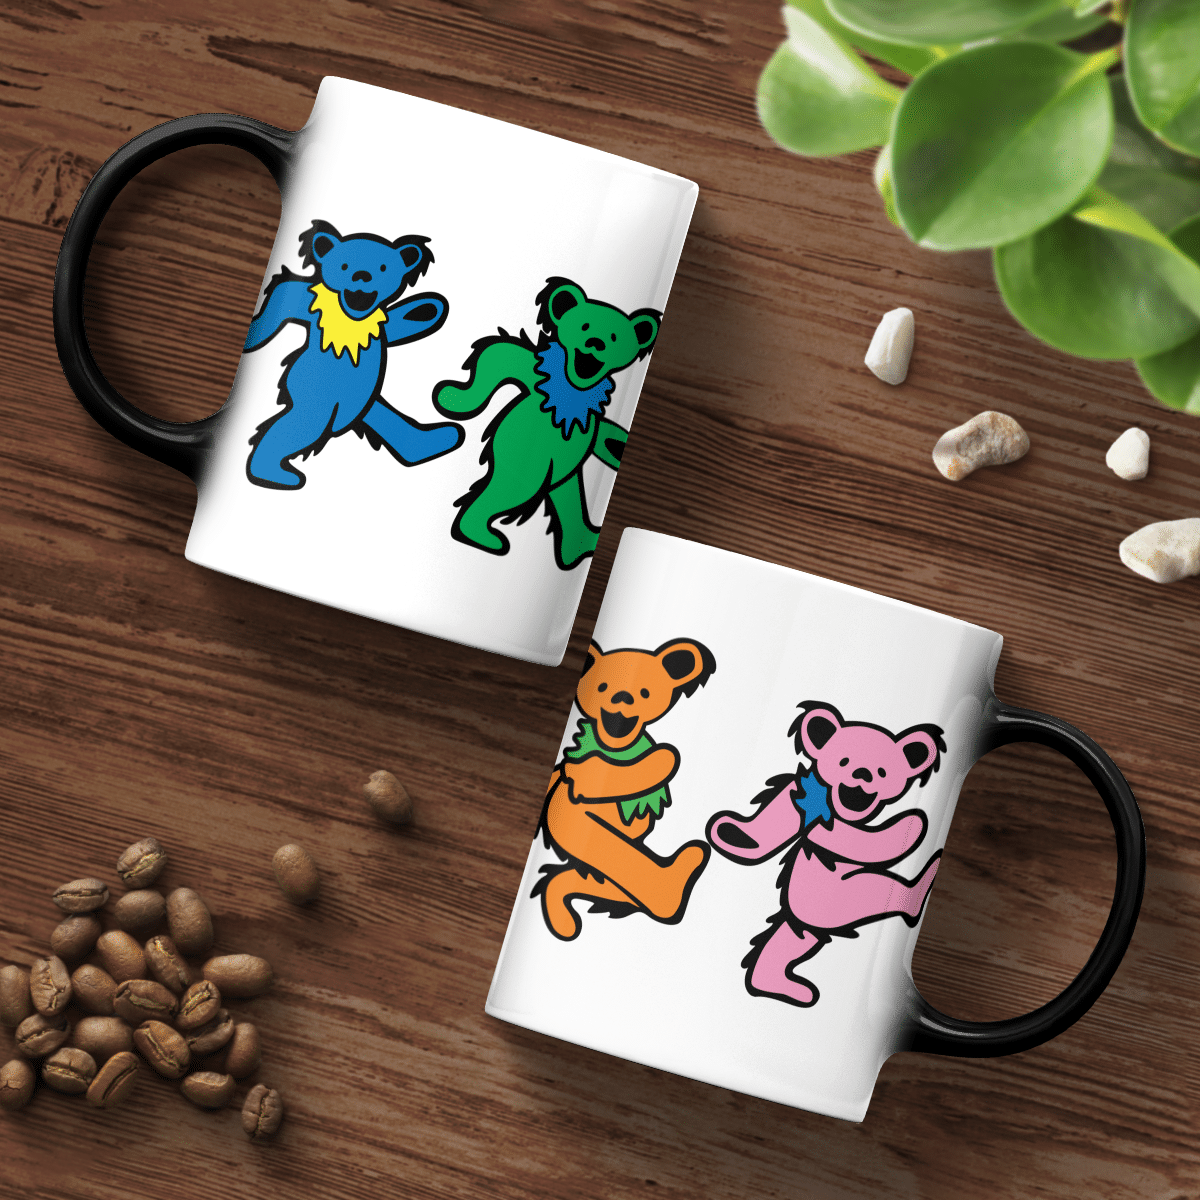 Dancing Bears Mug